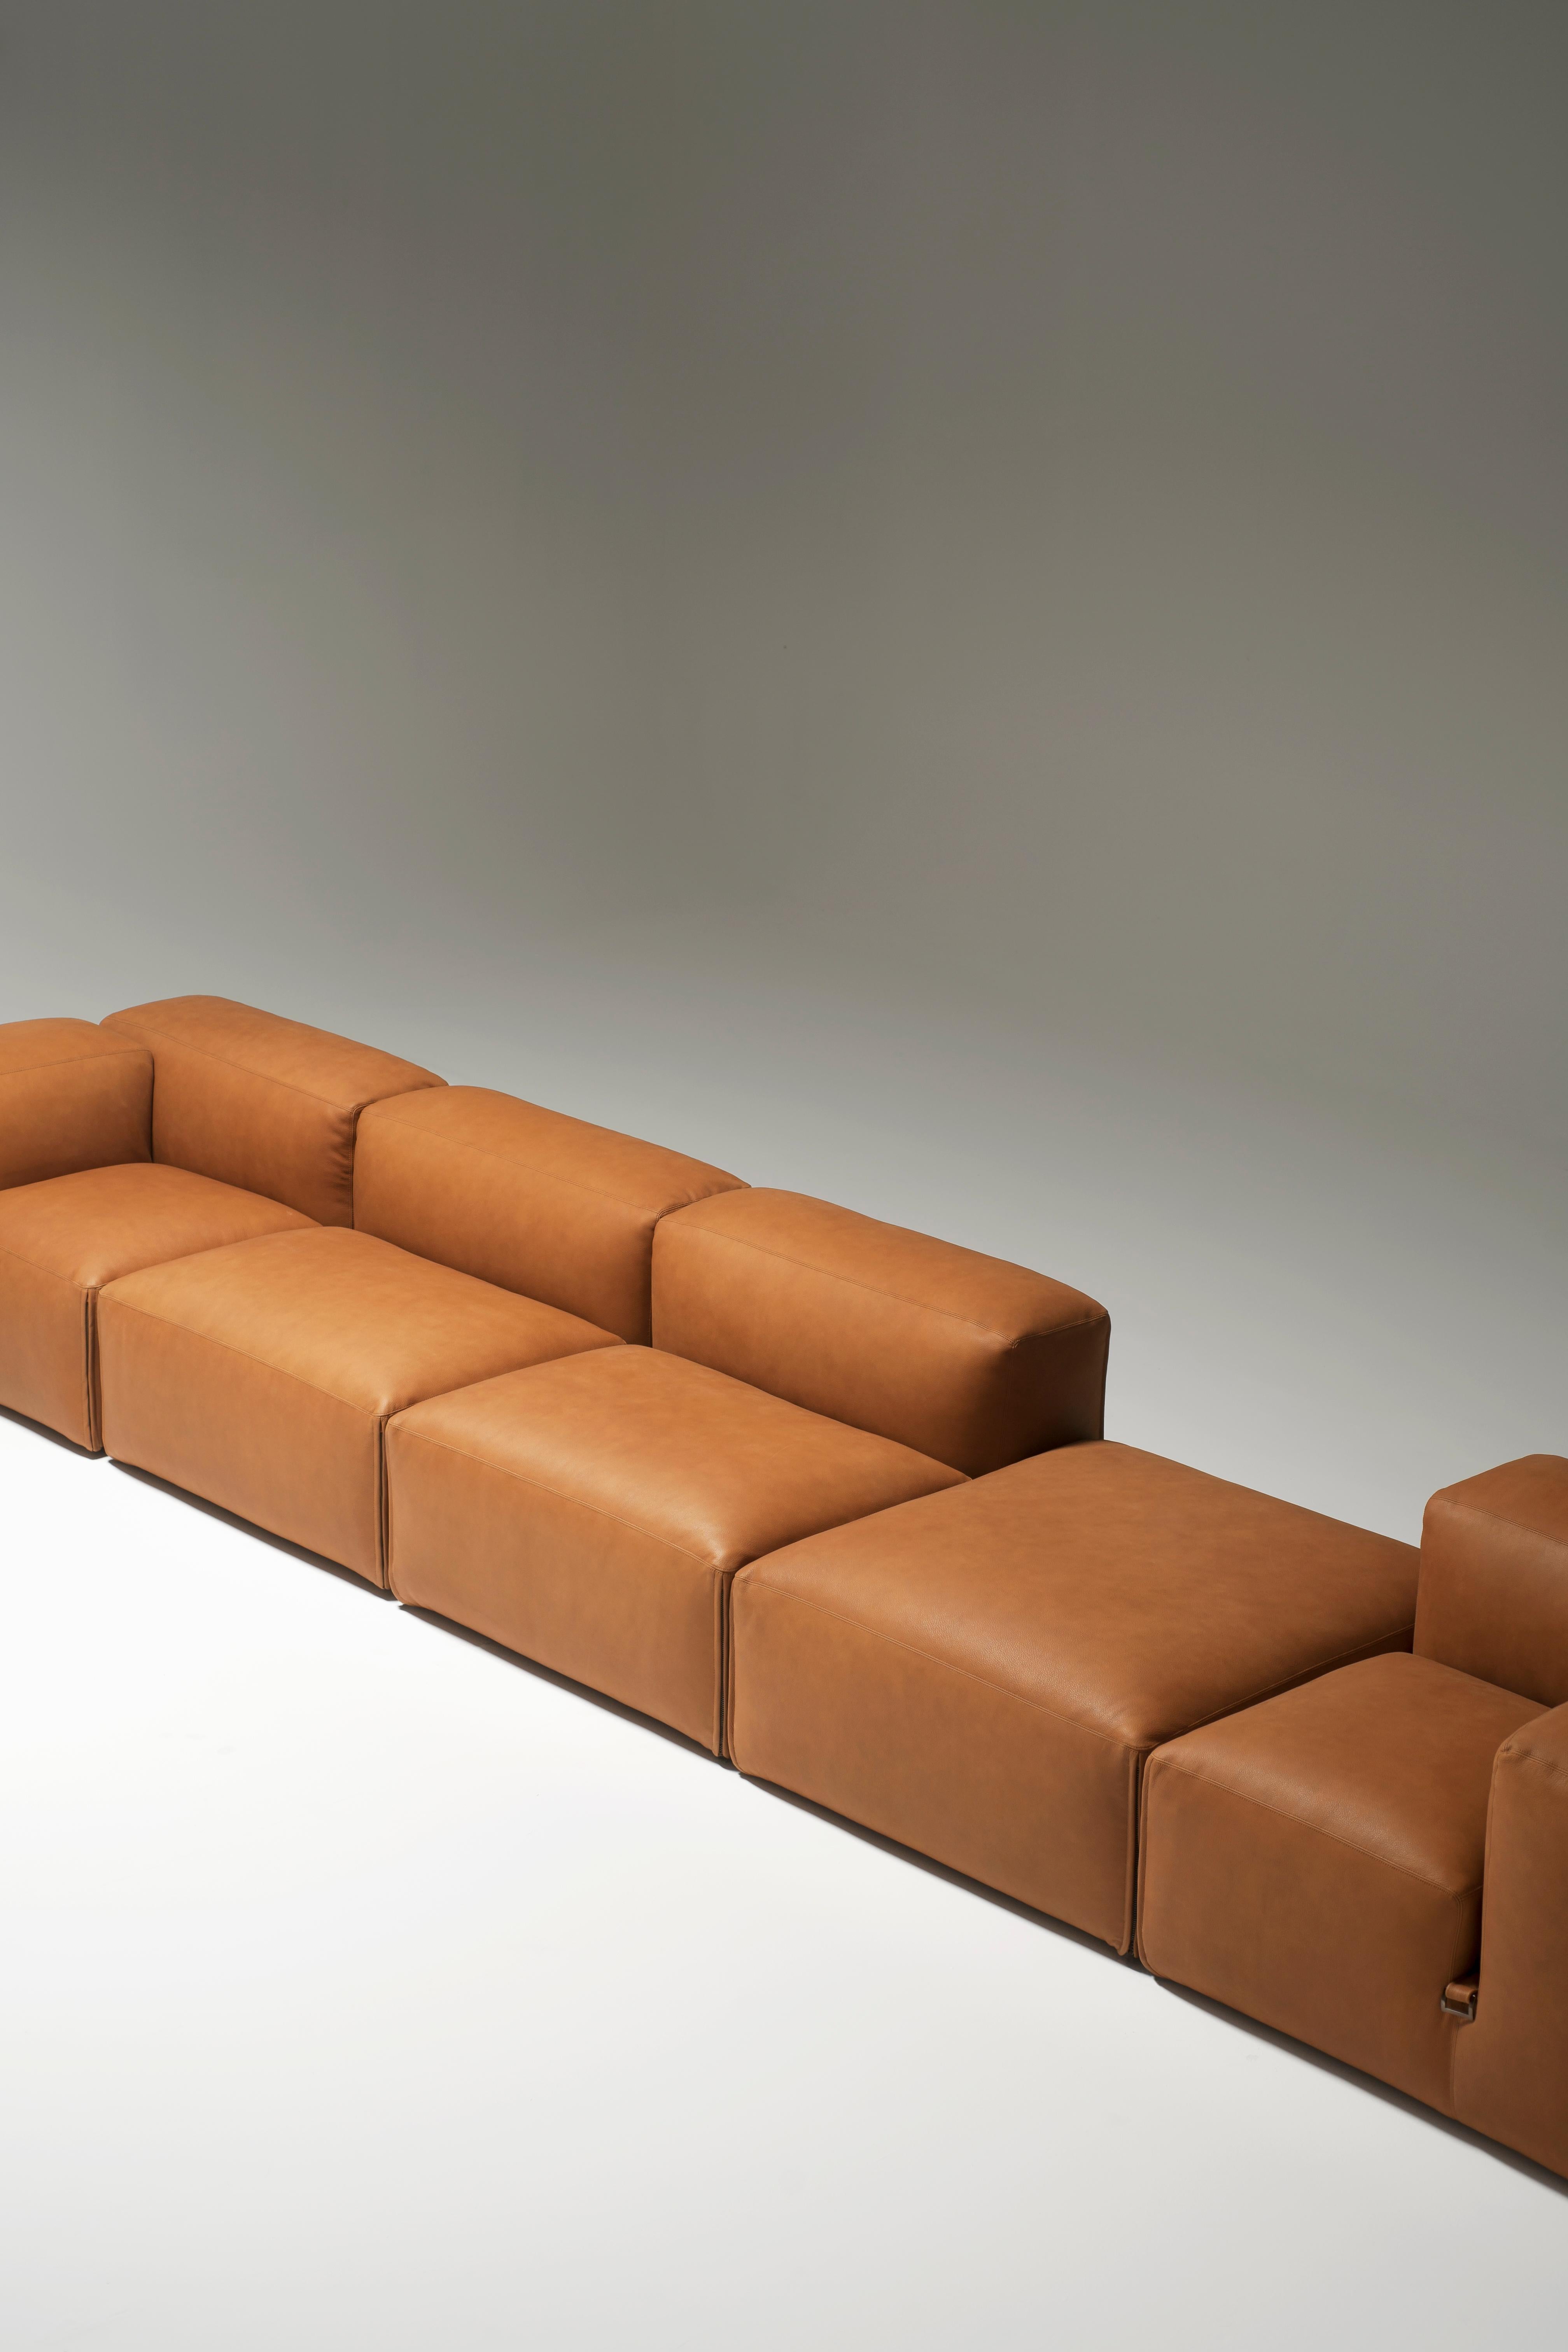 Contemporary Tacchini Le Mura Modular Sofa designed by Mario Bellini